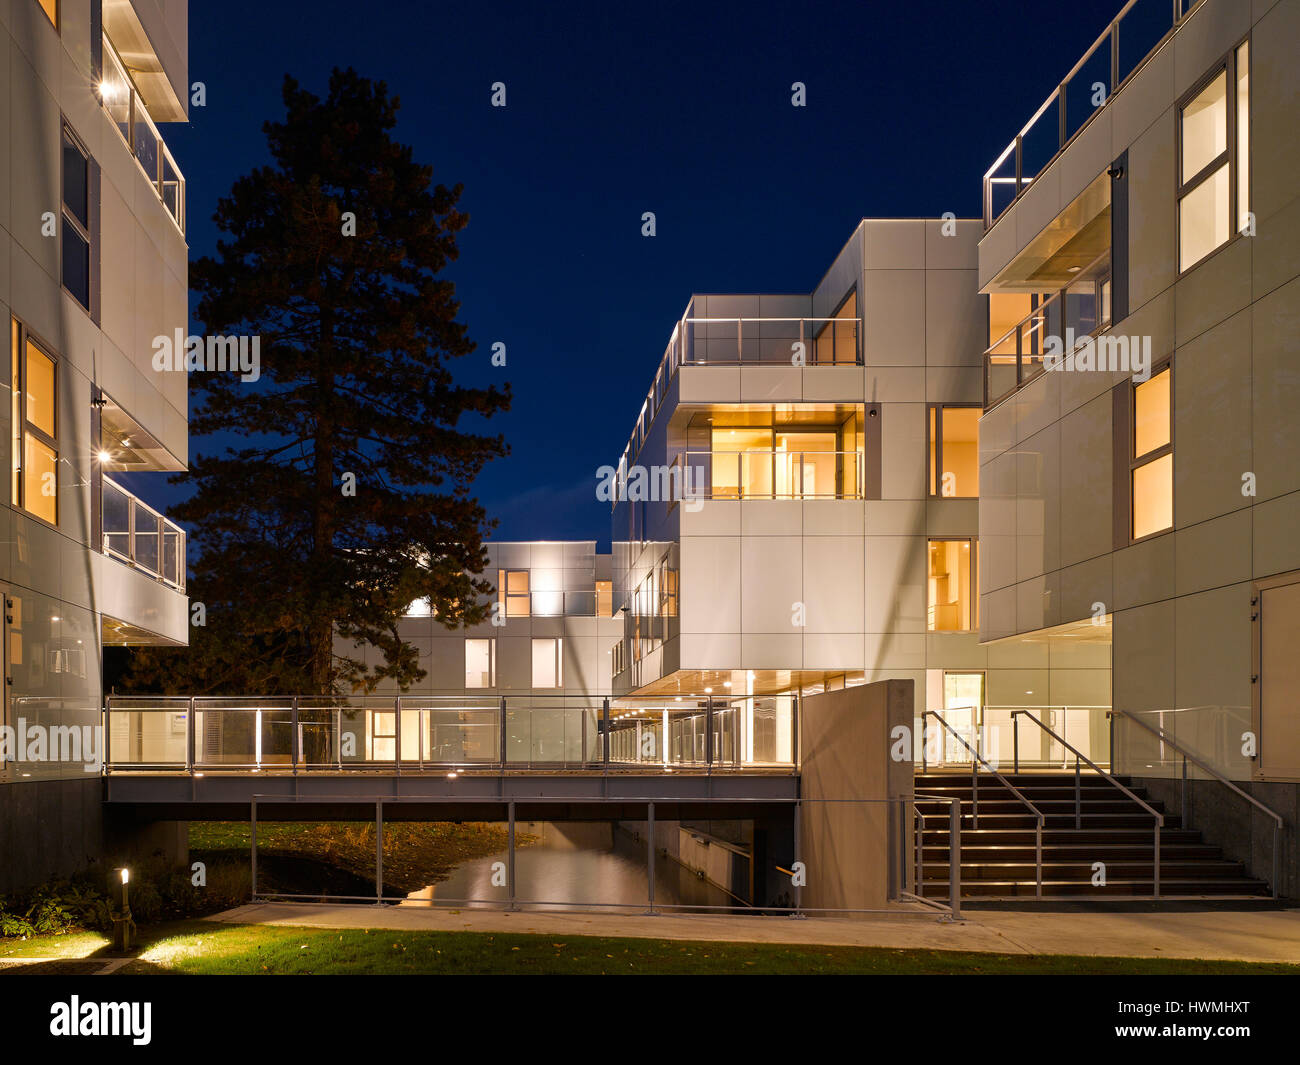 Nachtansicht von außen mit Treppe und Gehweg über Fluss. Dunluce Apartments, Ballsbridge, Irland. Architekt: Derek Tynan Architekten, 2016. Stockfoto